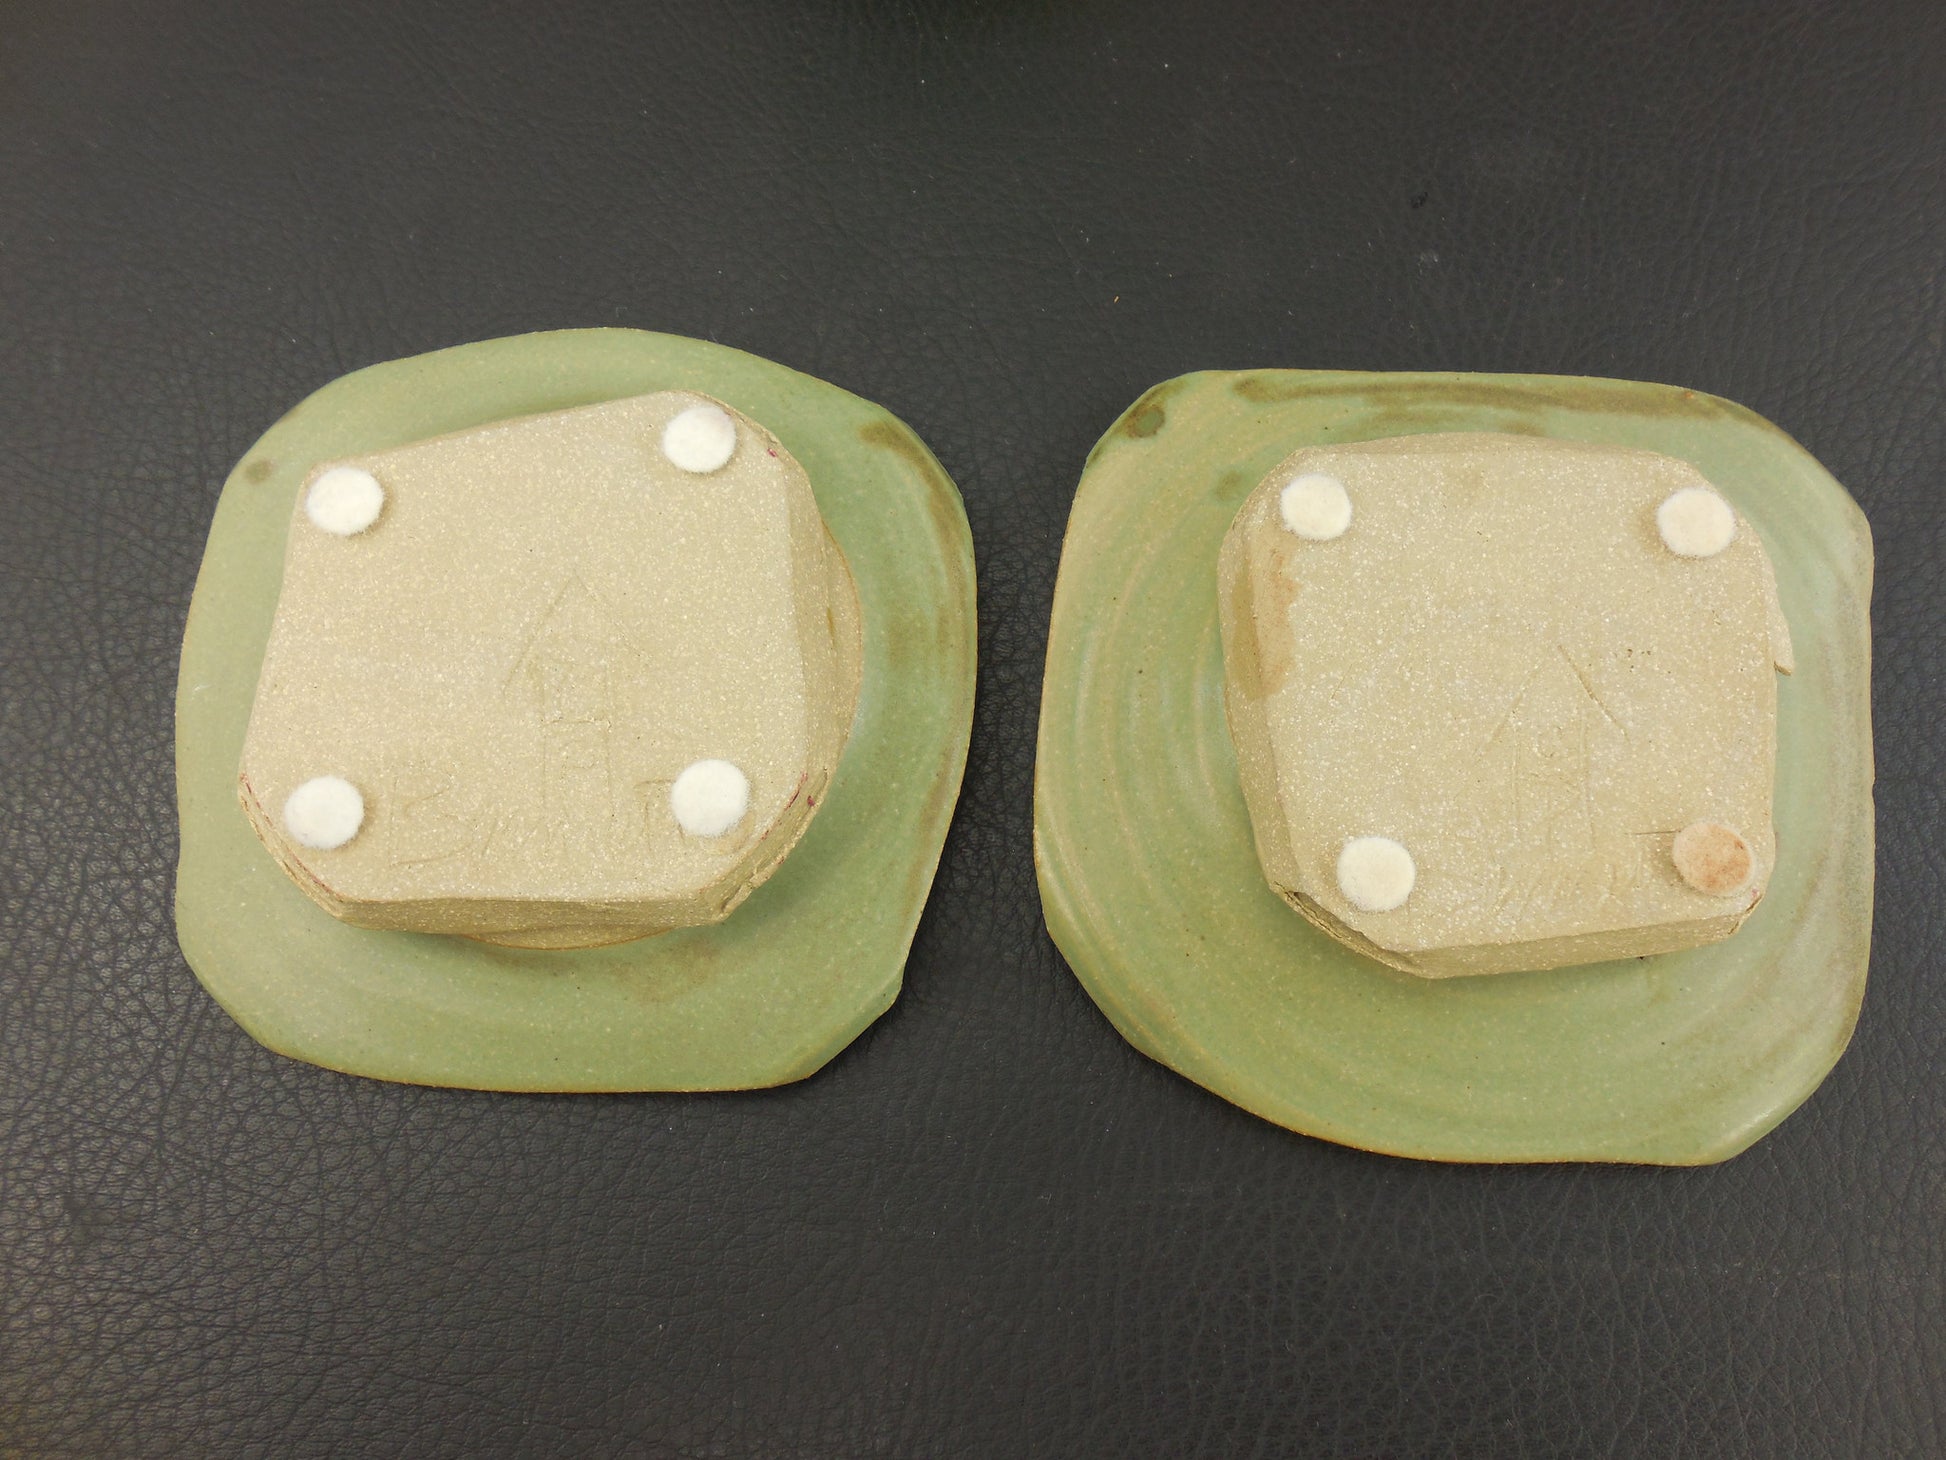 Bennett Signed Pair Studio Art Pottery 5" Bowls Dishes - Green Reddish Swirl... maker mark